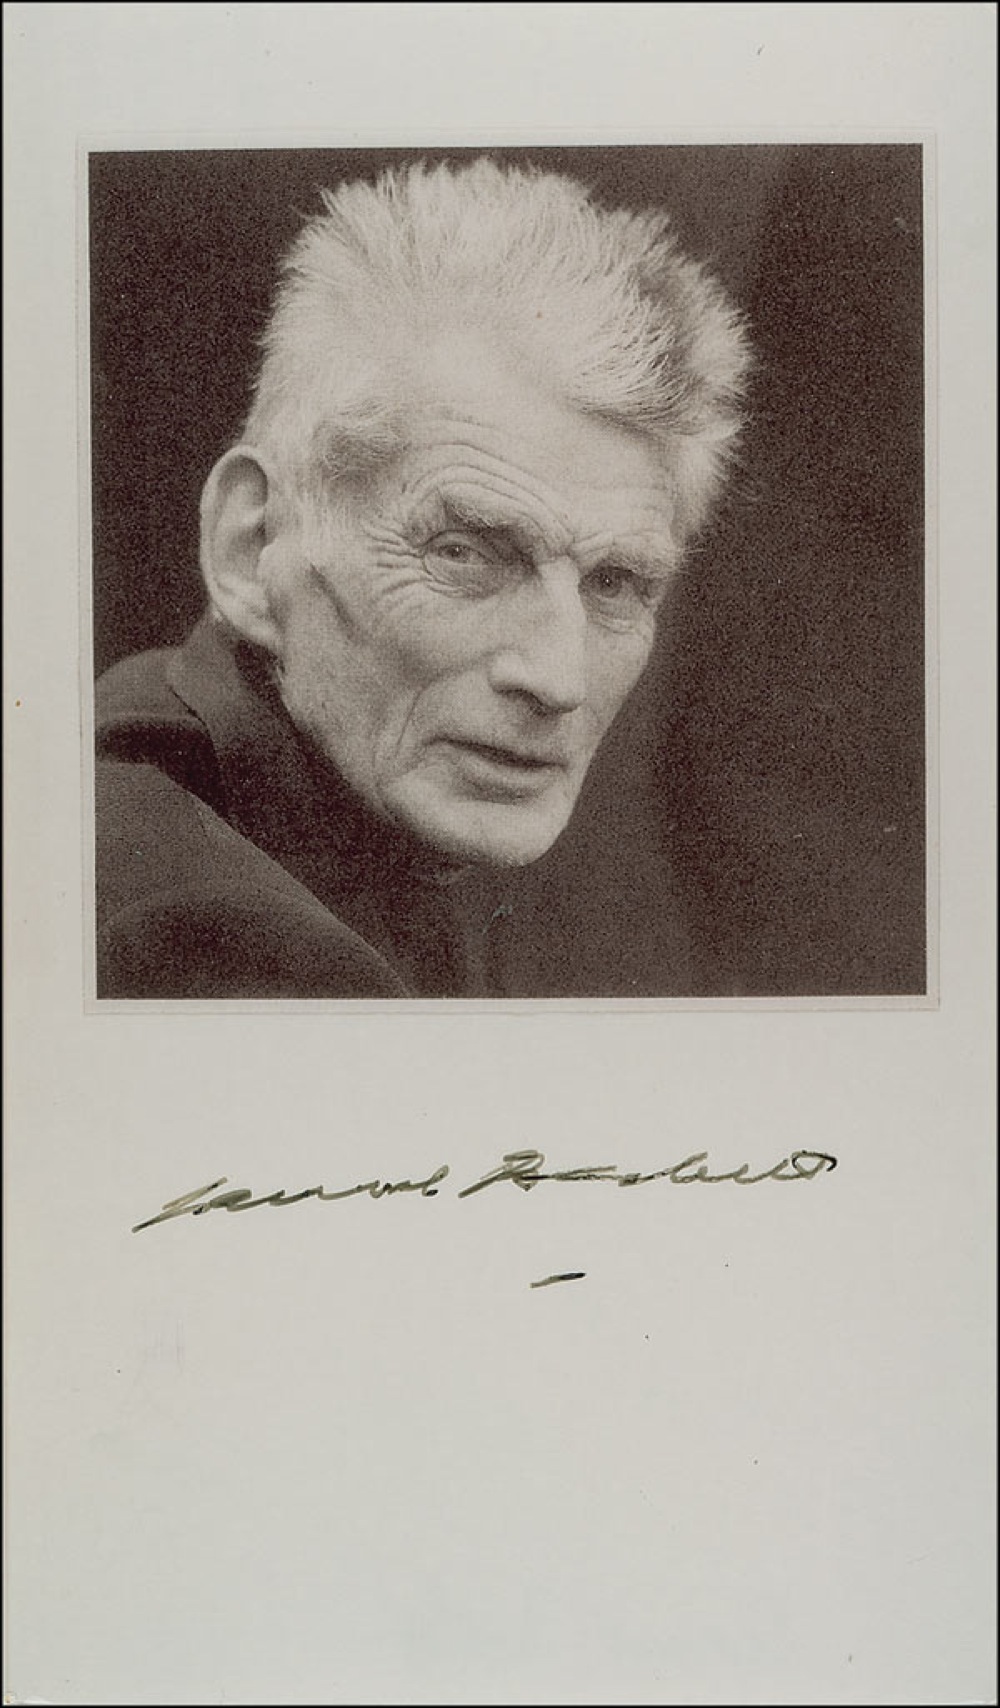 Lot #558 Samuel Beckett